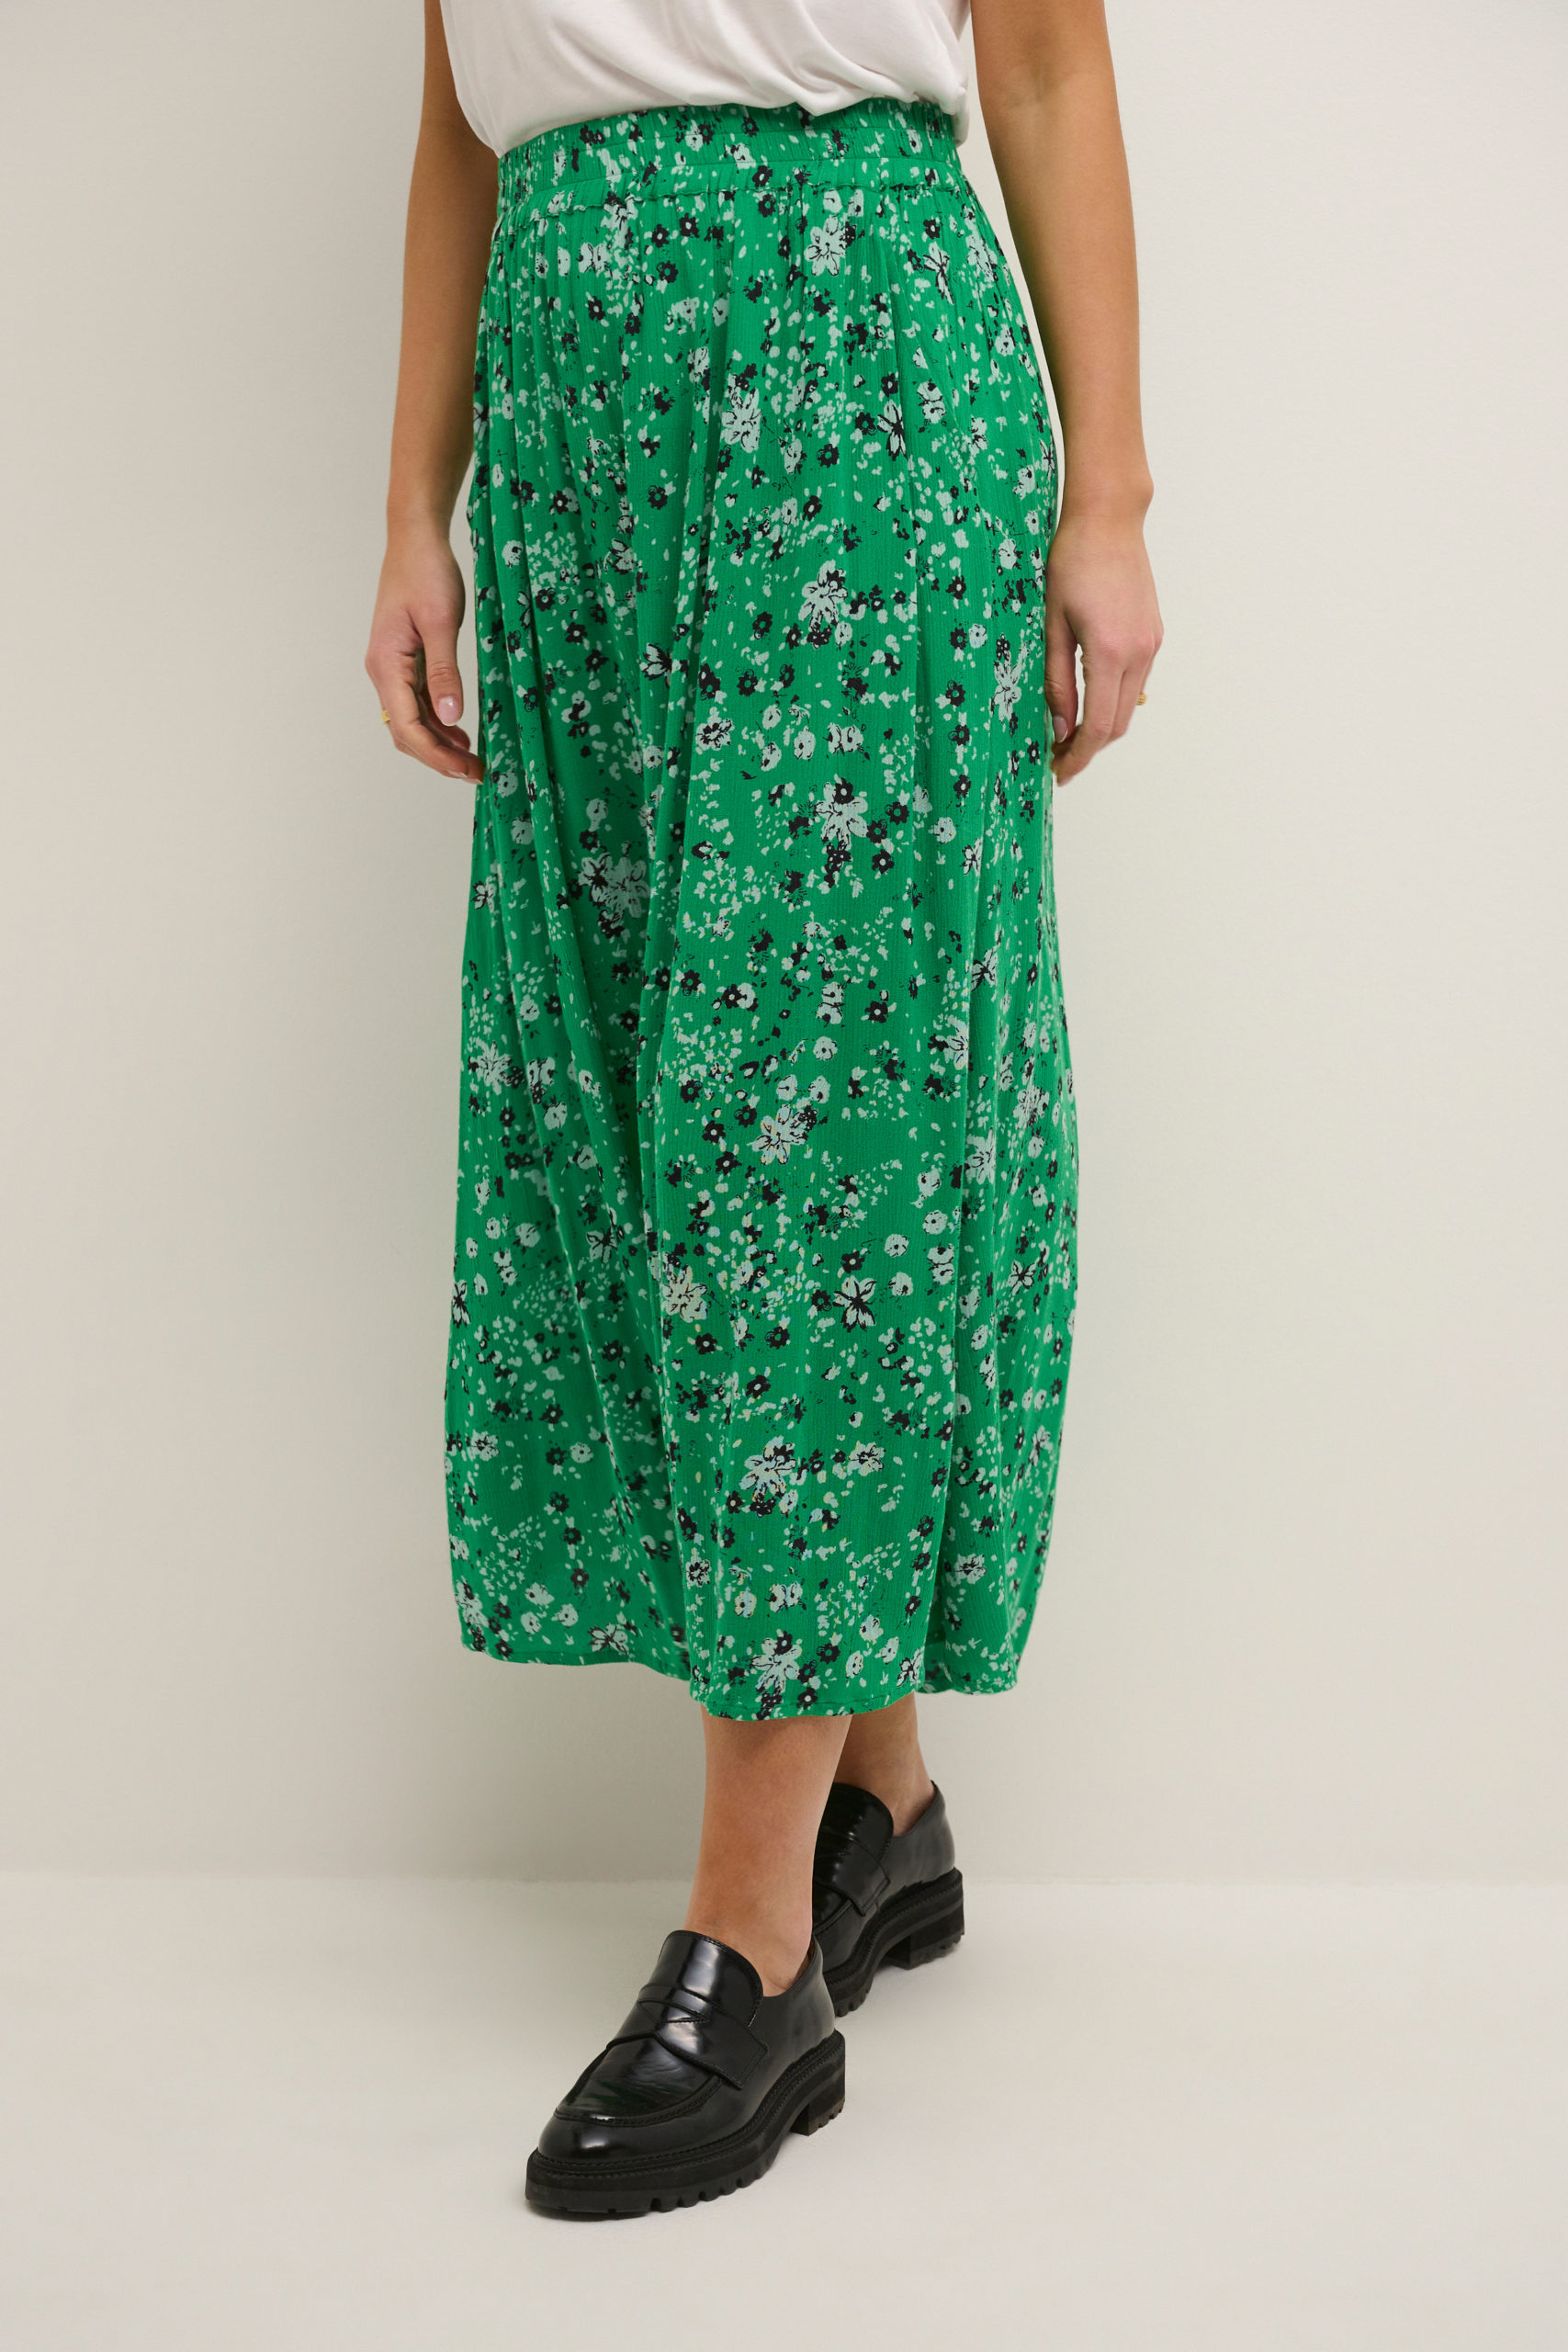 KAvilia Amber Skirt green front